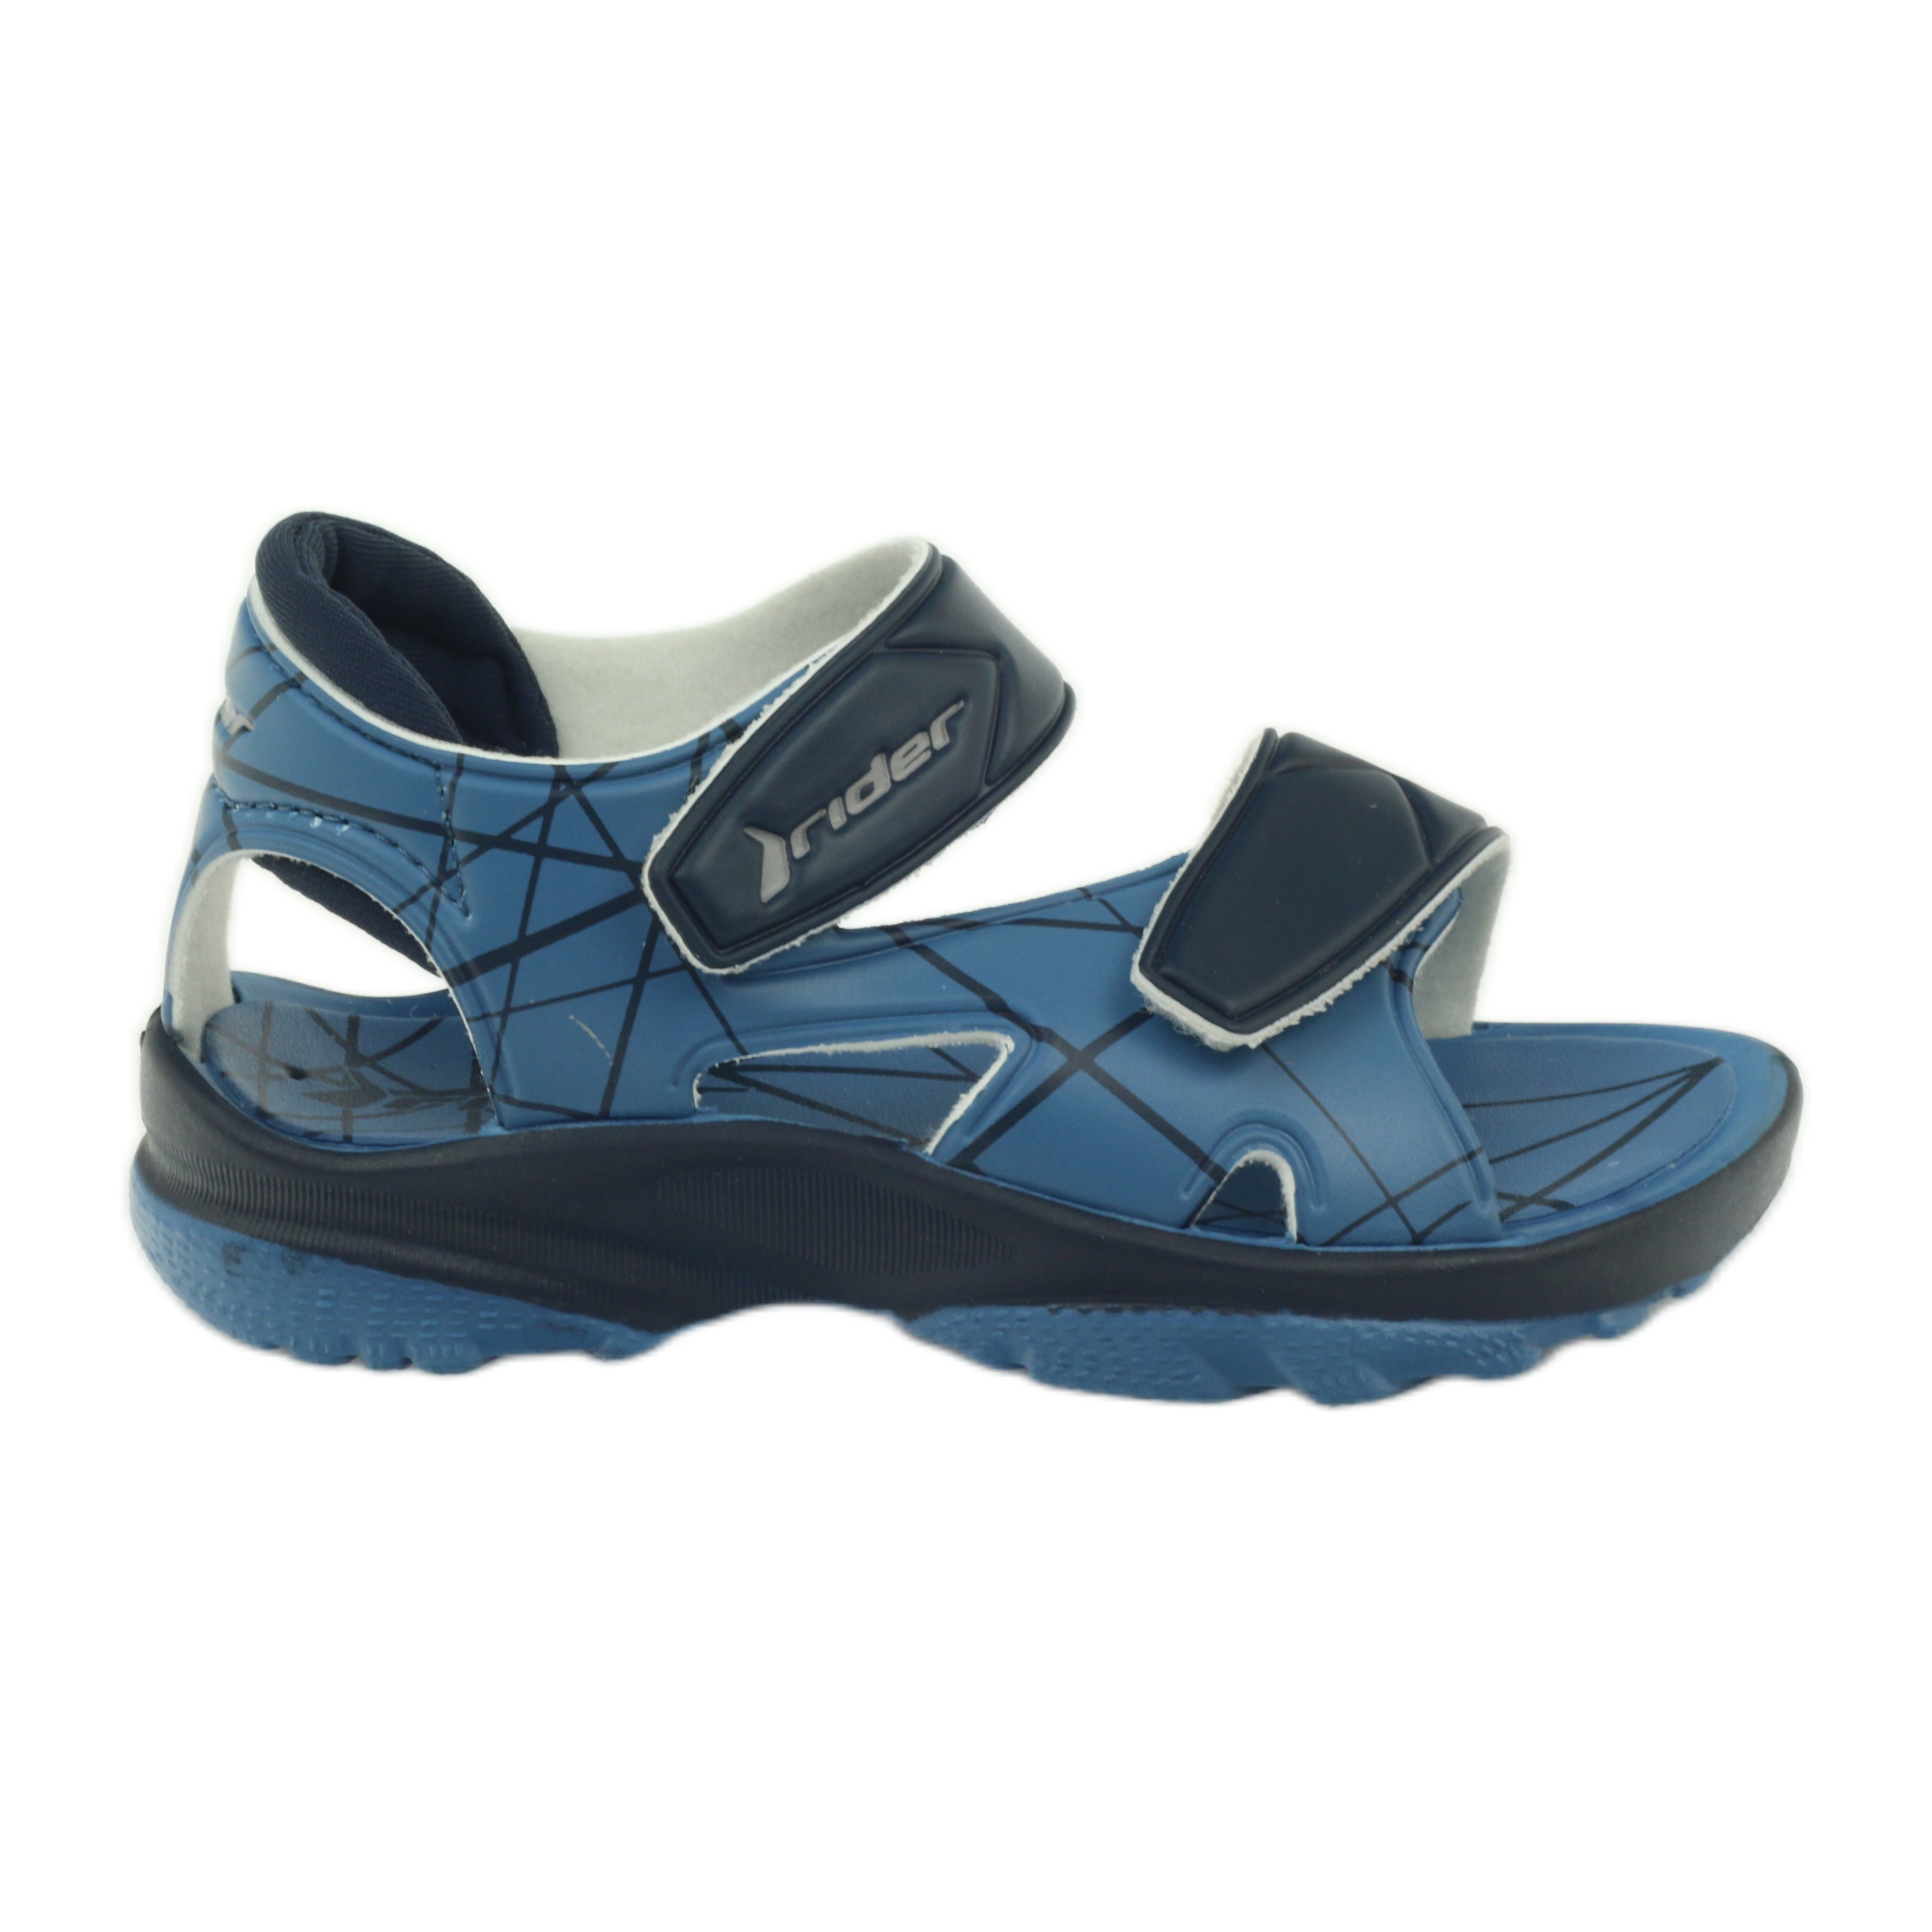 Niebieskie sandałki buty dziecięce na rzepy do wody Rider granatowe